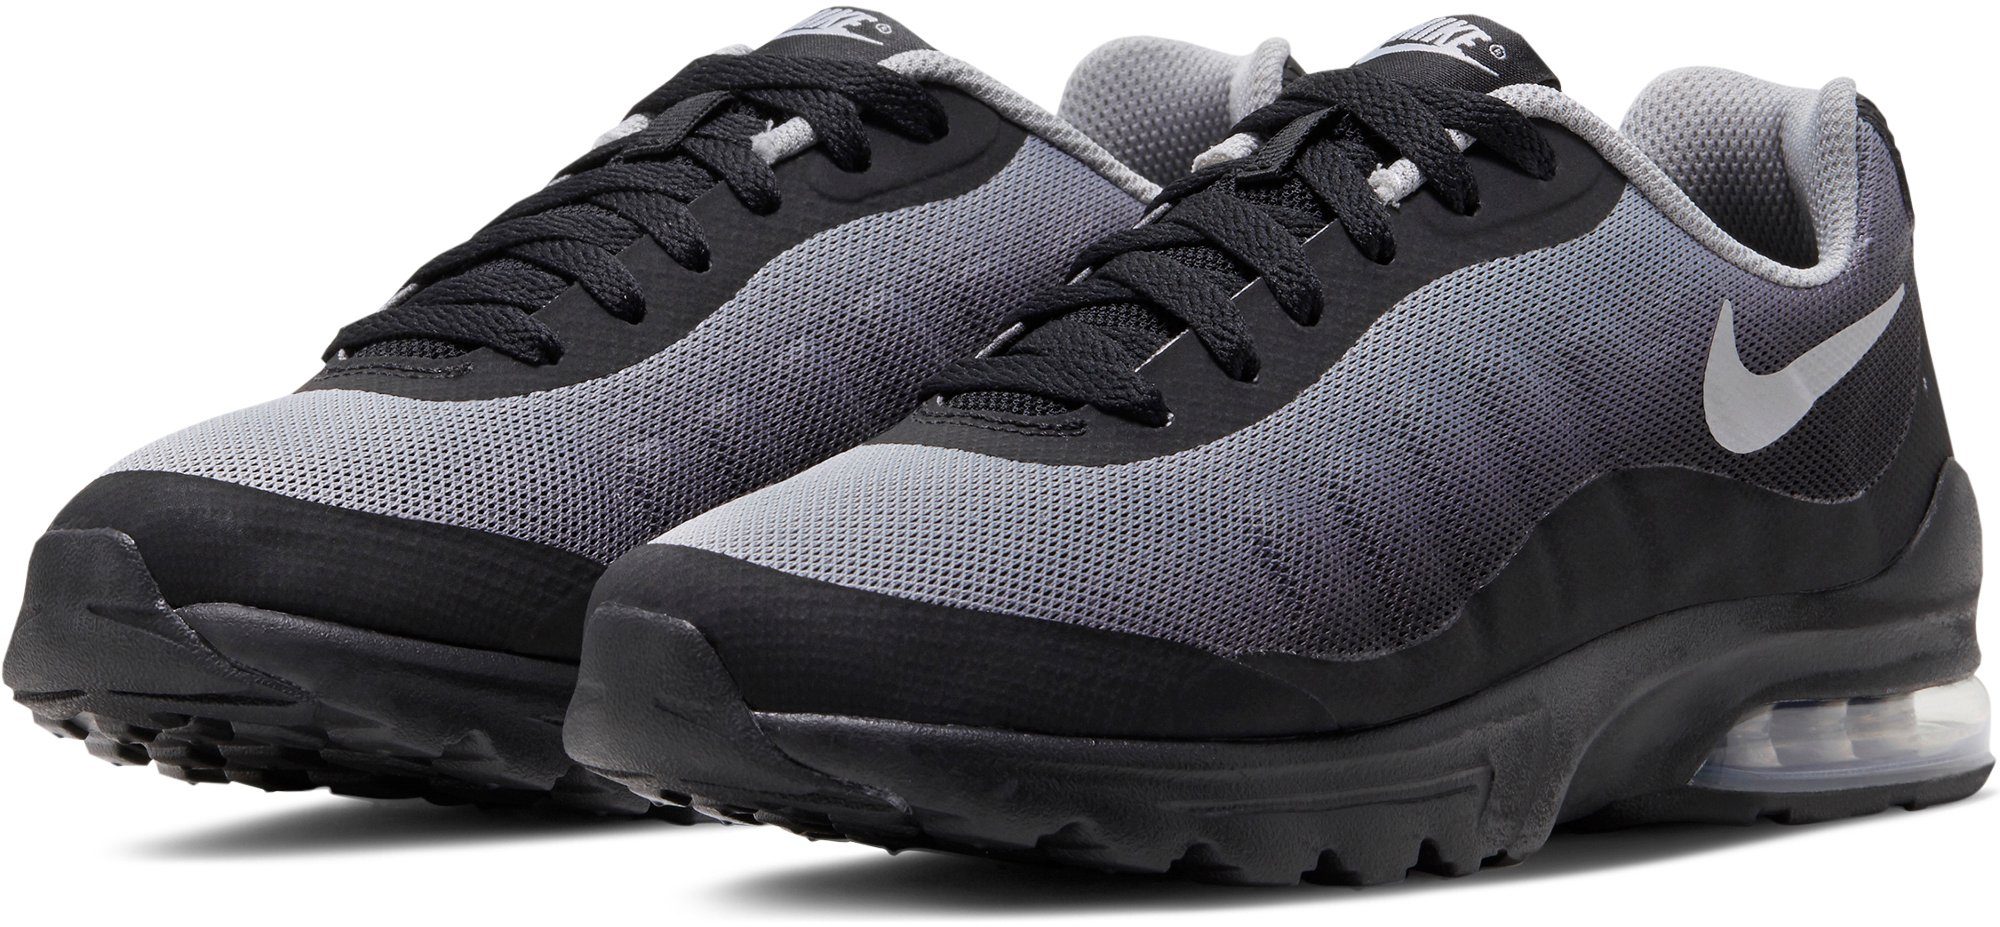 Nike Sportswear »AIR MAX INVIGOR« Sneaker kaufen | OTTO